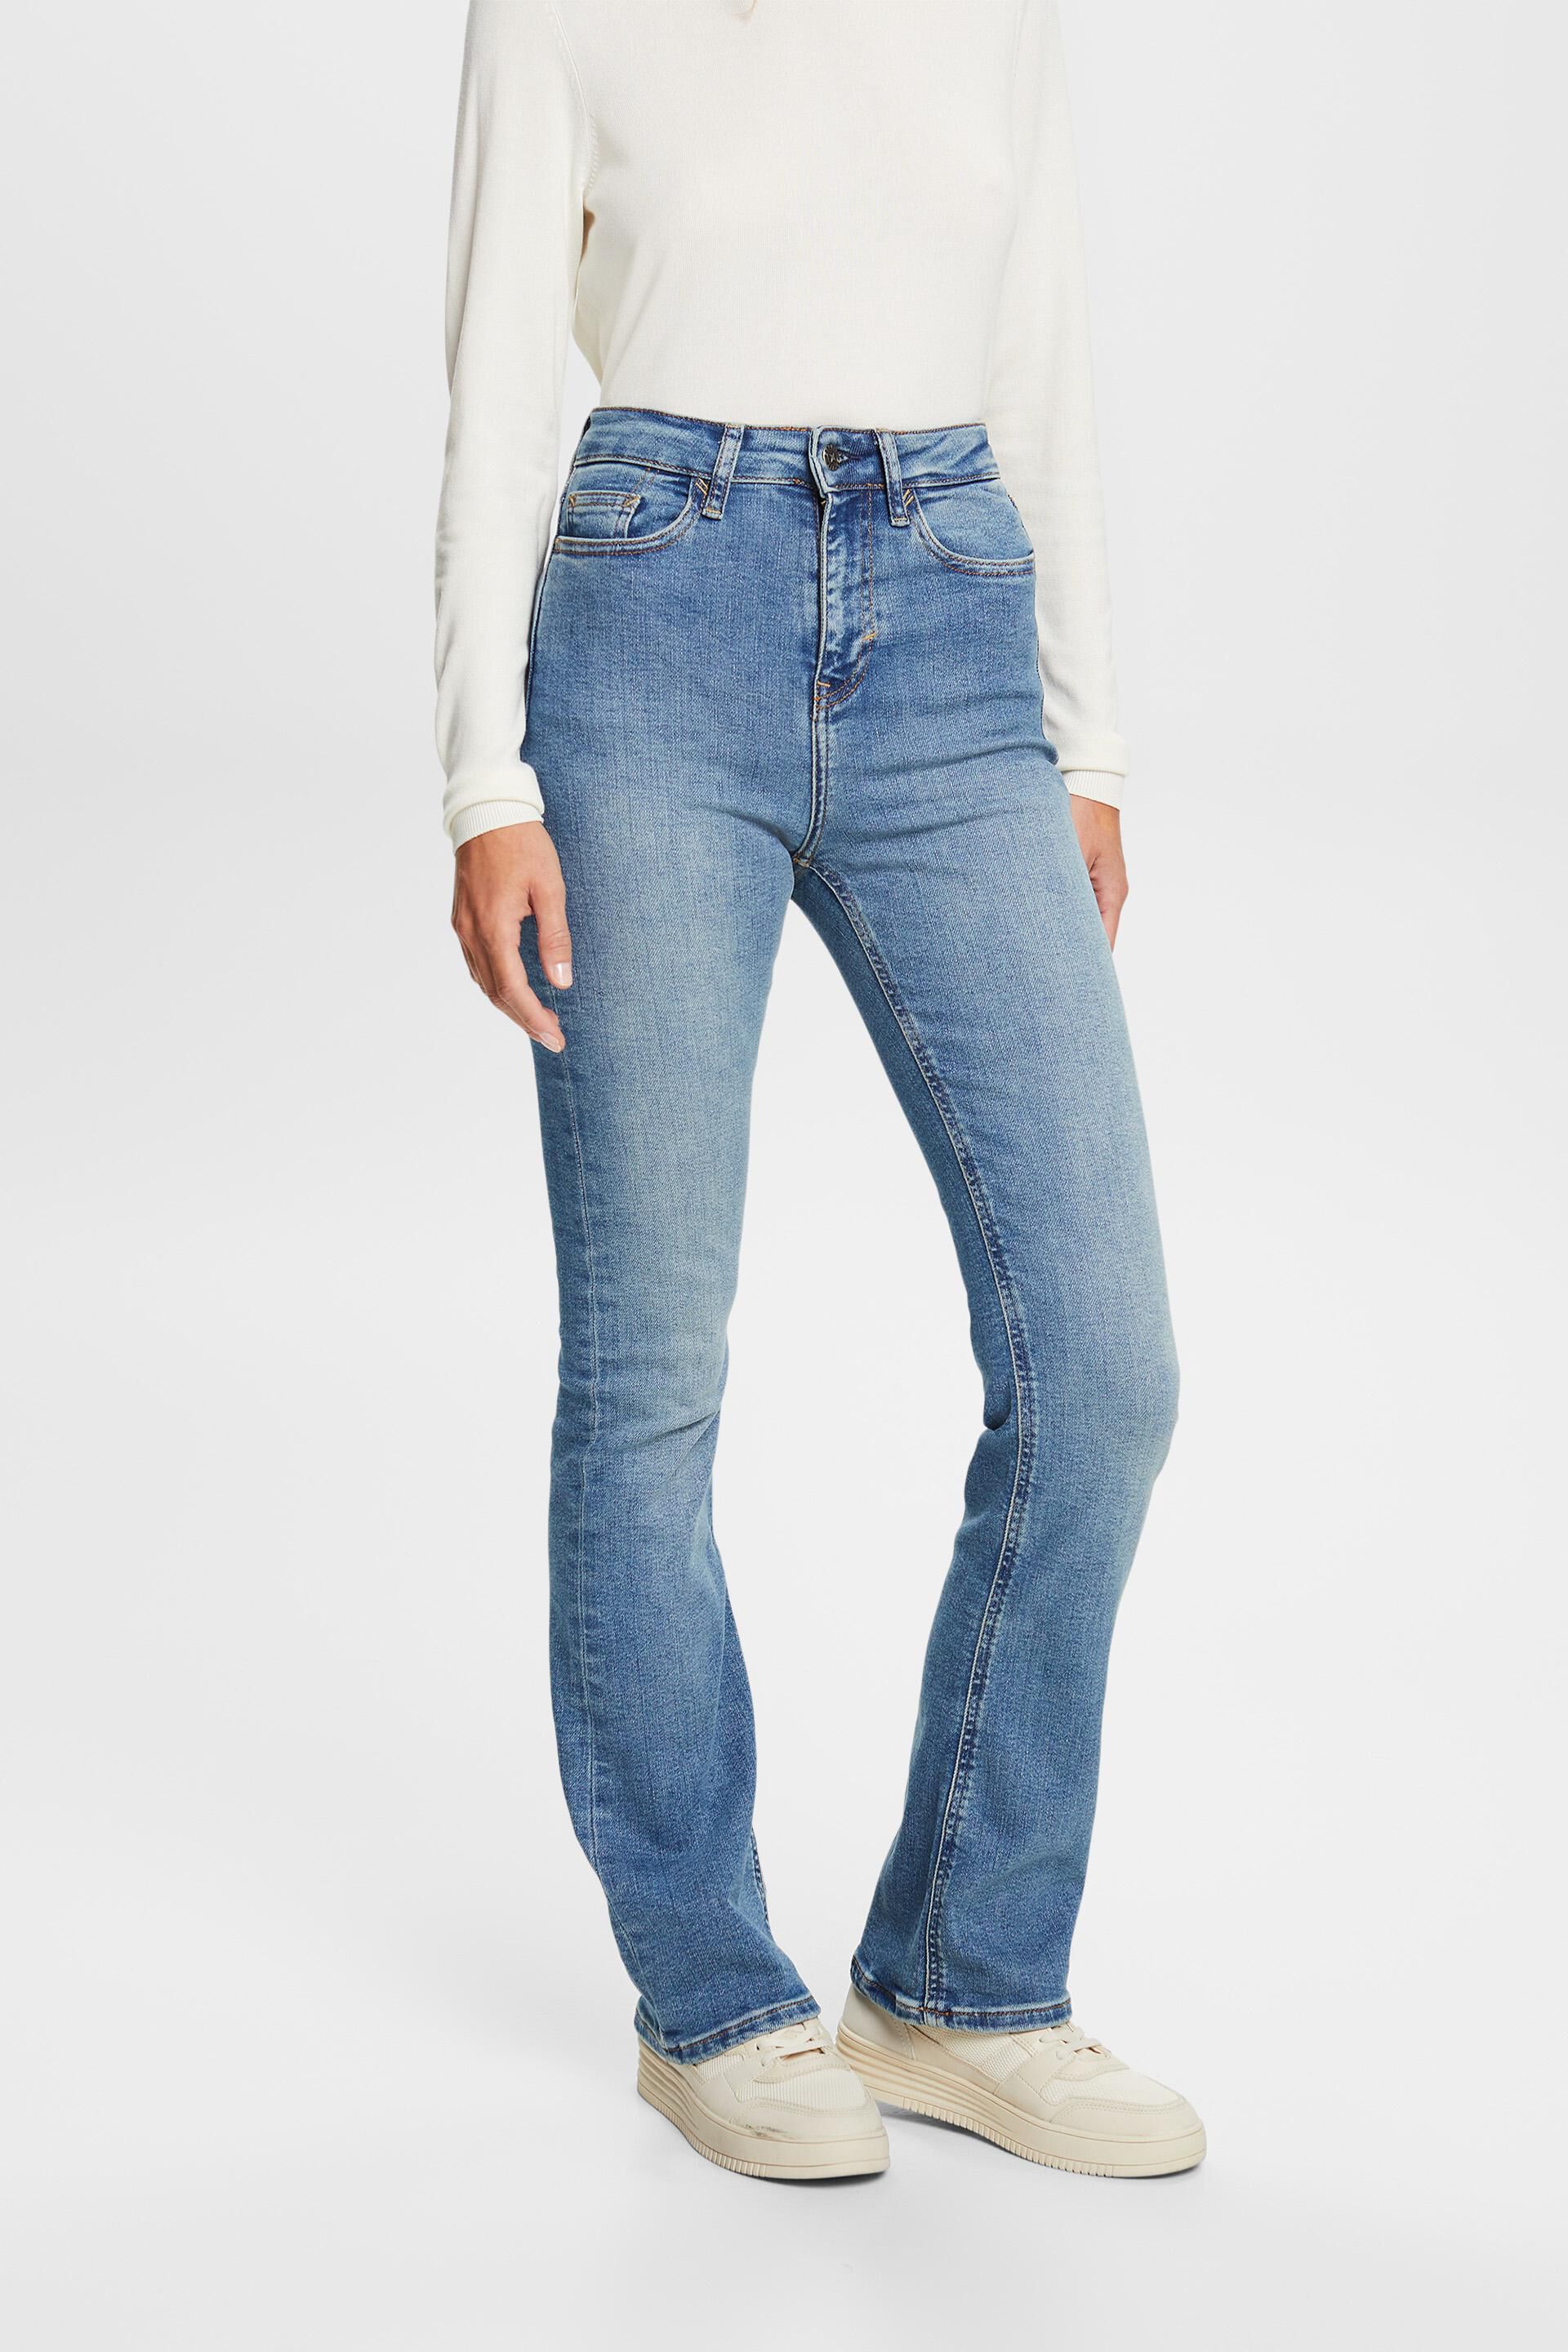 Esprit Damen High-rise bootcut stretch jeans